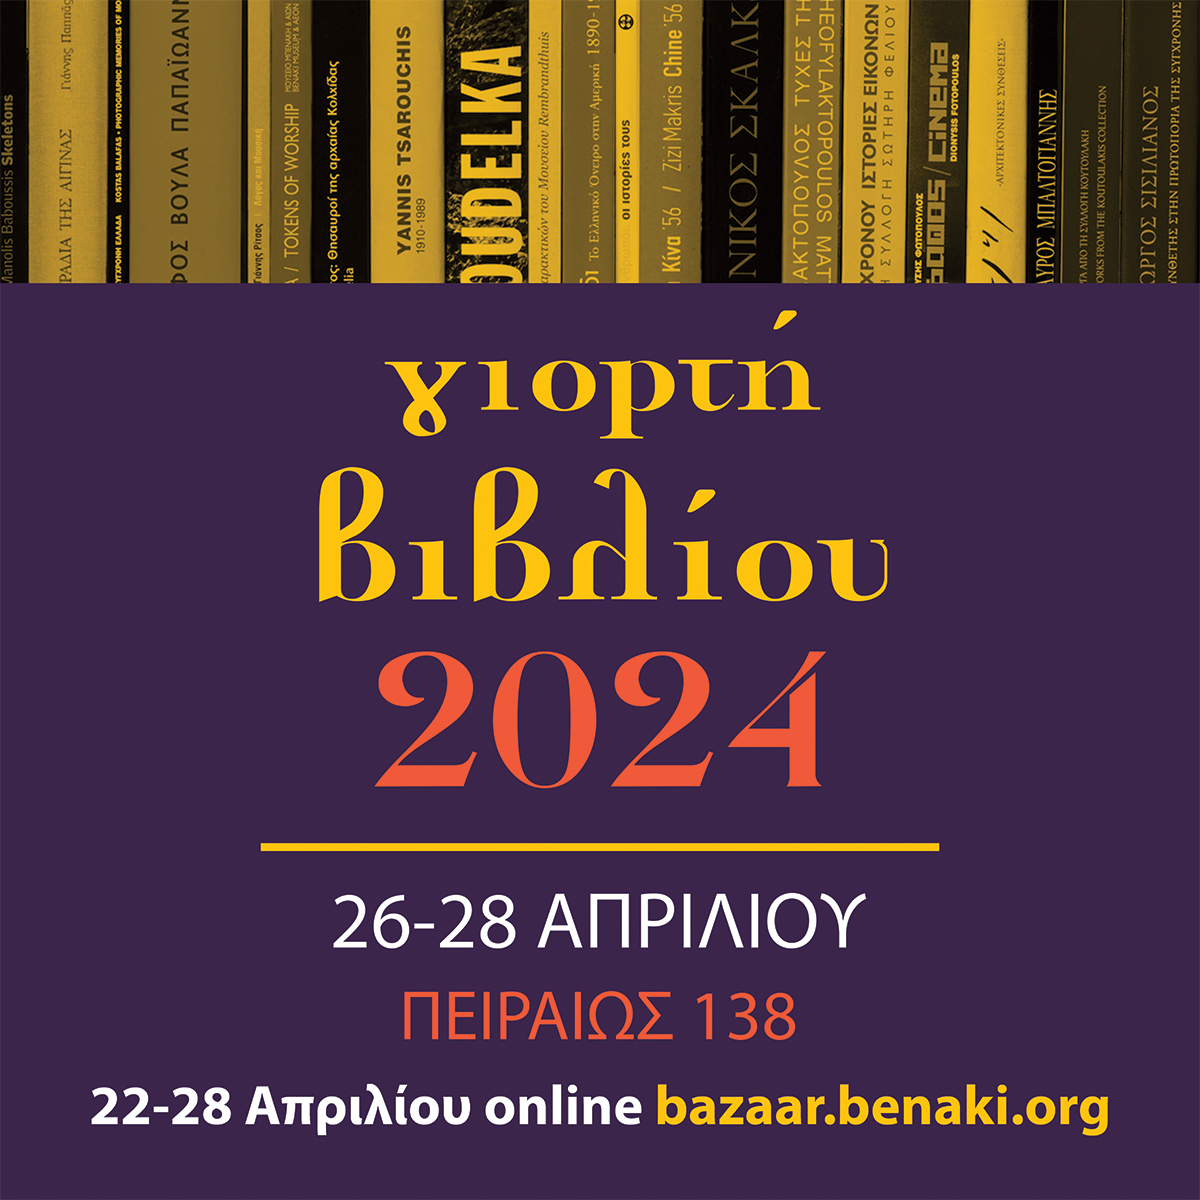 ΣΗΜΕΡΑ ξεκινά ONLINE το 📚ΜΕΓΑΛΟ BAZAAR ΒΙΒΛΙΩΝ στις πλαίσιο της Γιορτής Βιβλίου 2024 220 εκδόσεις του Μουσείου σε έκπτωση 50 % & 70% bazaar.benaki.org ΔΕΙΤΕ ΤΟΝ ΚΑΤΑΛΟΓΟ ΤΩΝ ΒΙΒΛΙΩΝ bit.ly/3WbAzPW Για την ΓΙΟΡΤΗ ΒΙΒΛΙΟΥ bit.ly/43OmMk0 #benakibookbazaar